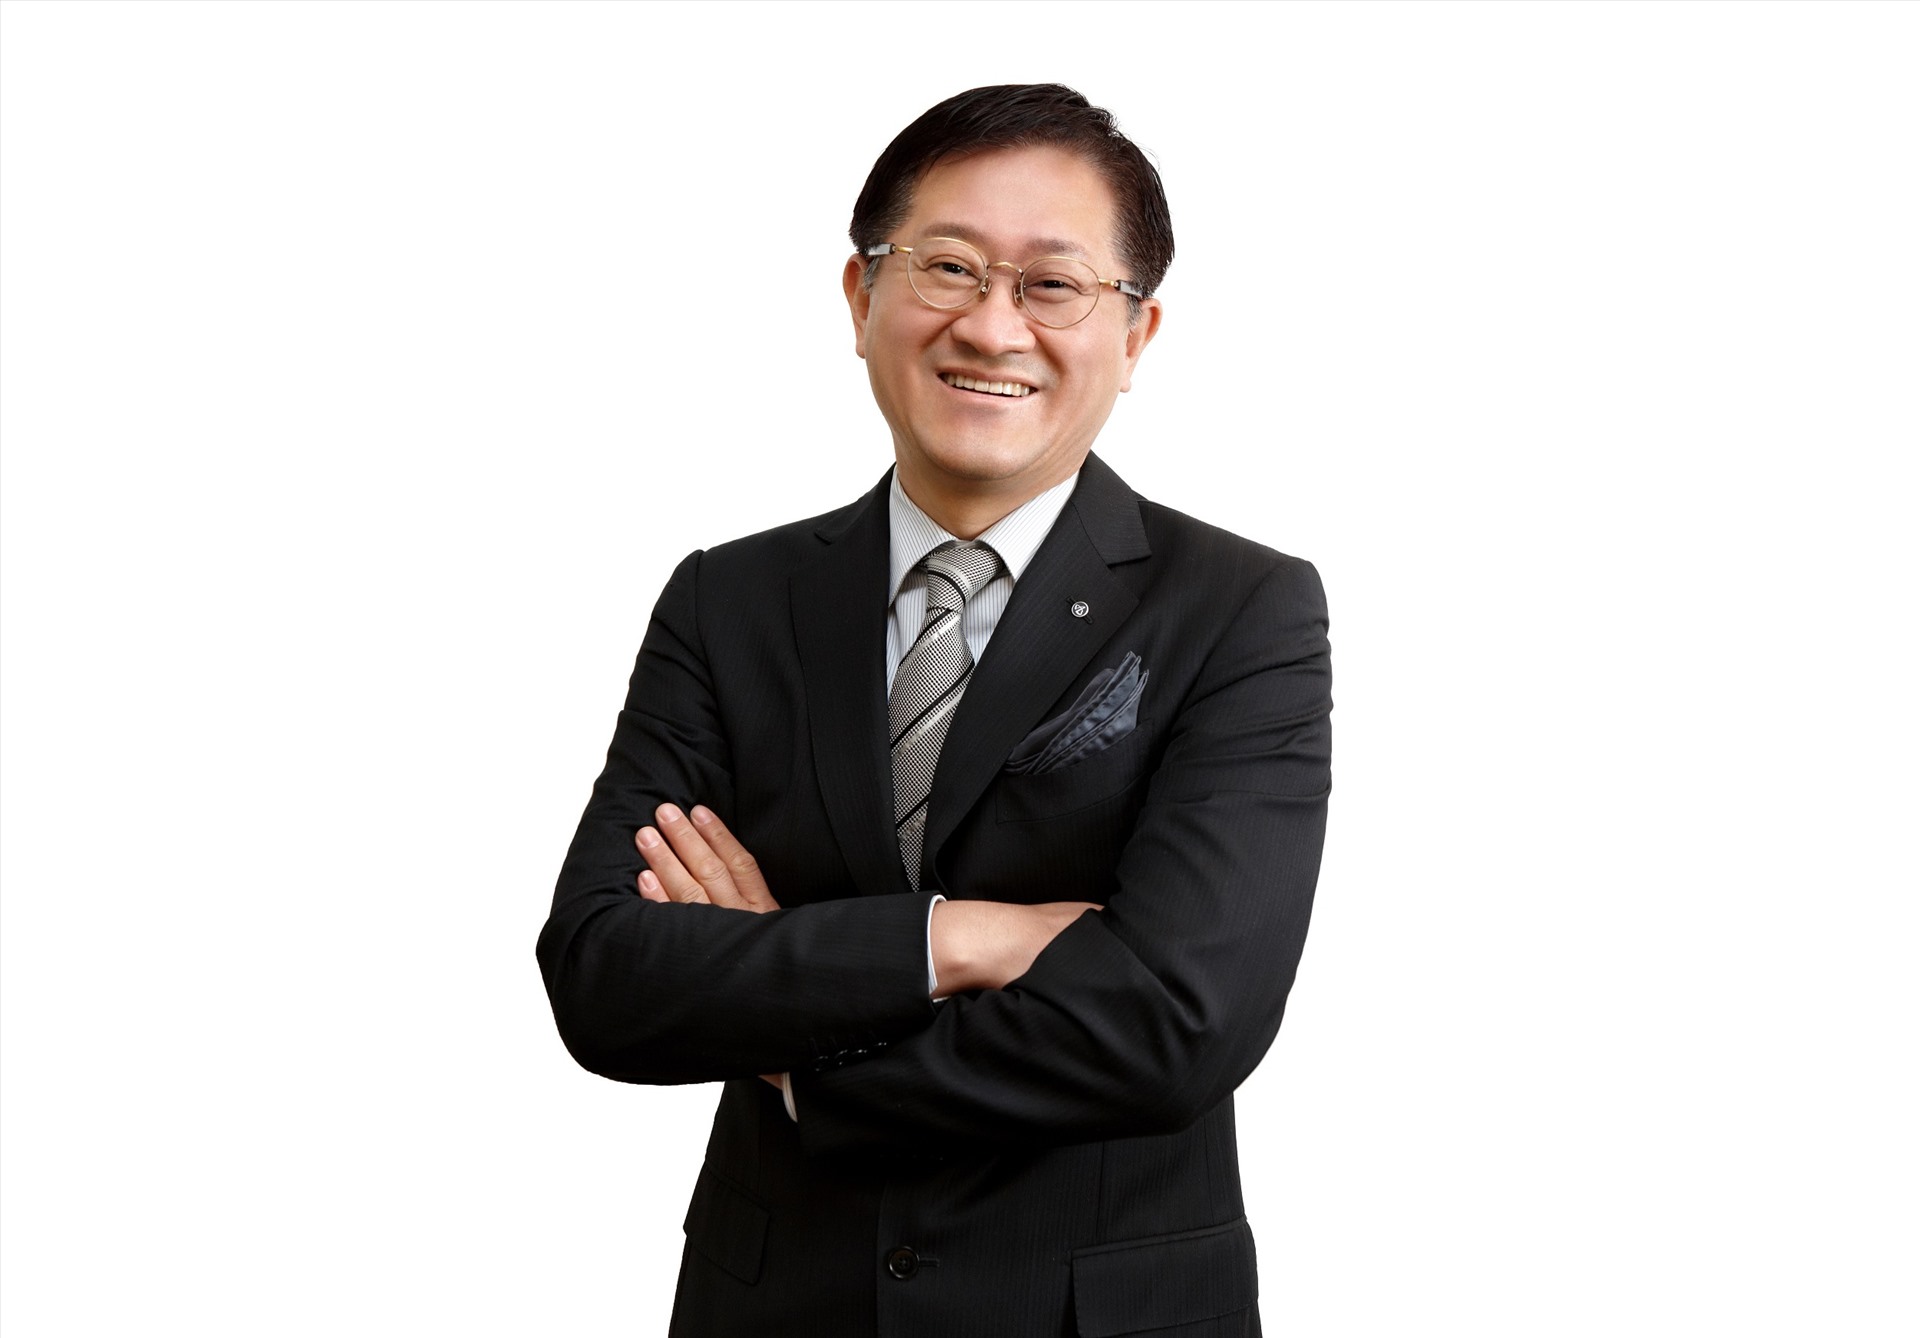 Suh Kyung-bae là Chủ tịch của AmorePacific, nhà sản xuất mỹ phẩm và chăm sóc da lớn nhất Hàn Quốc. AmorePacific do cha của ông Suh Kyung-base là Suh Sung-hwan sáng lập vào năm 1945. Ông đang là người giàu thứ 6 tại Hàn Quốc với khối tài sản 3,7 tỉ USD. Ảnh: